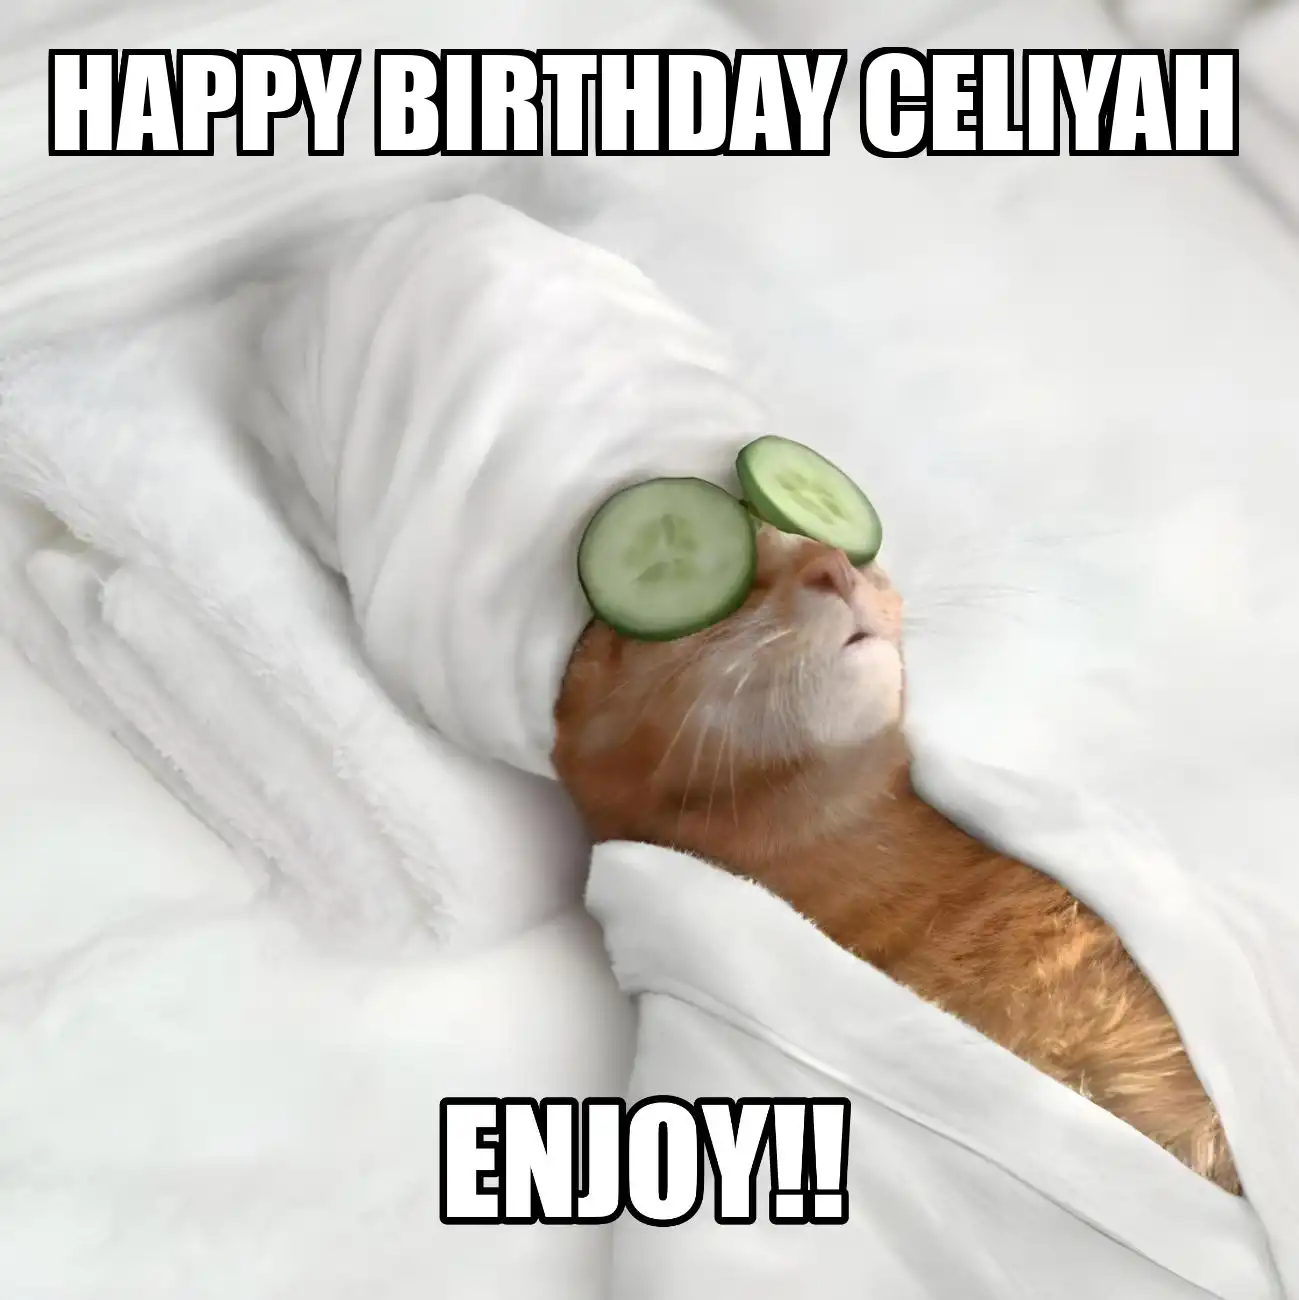 Happy Birthday Celiyah Enjoy Cat Meme